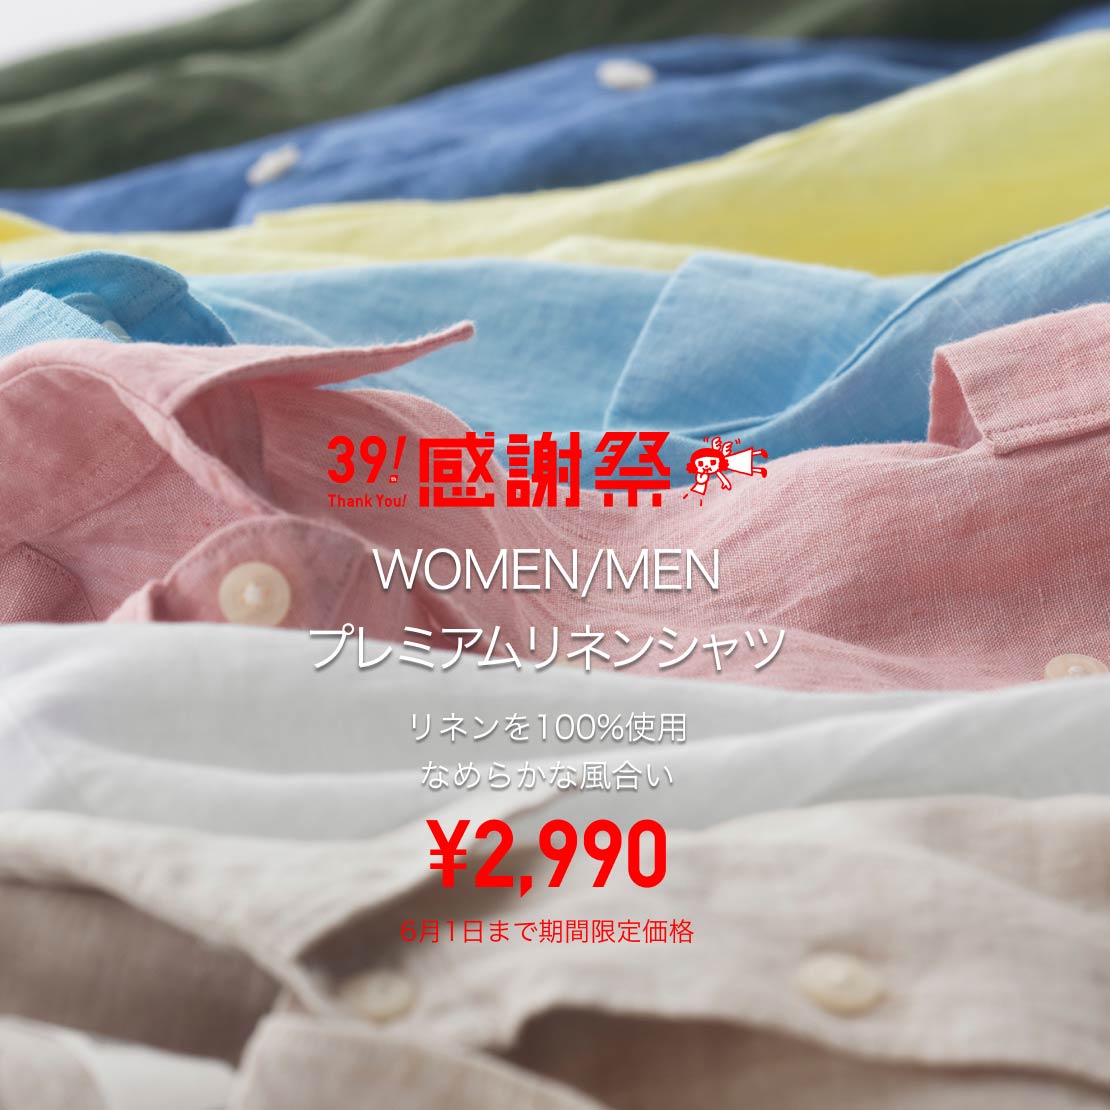 WOMEN/MEN プレミアムリネンシャツ ¥2,990 6月1日まで期間限定価格